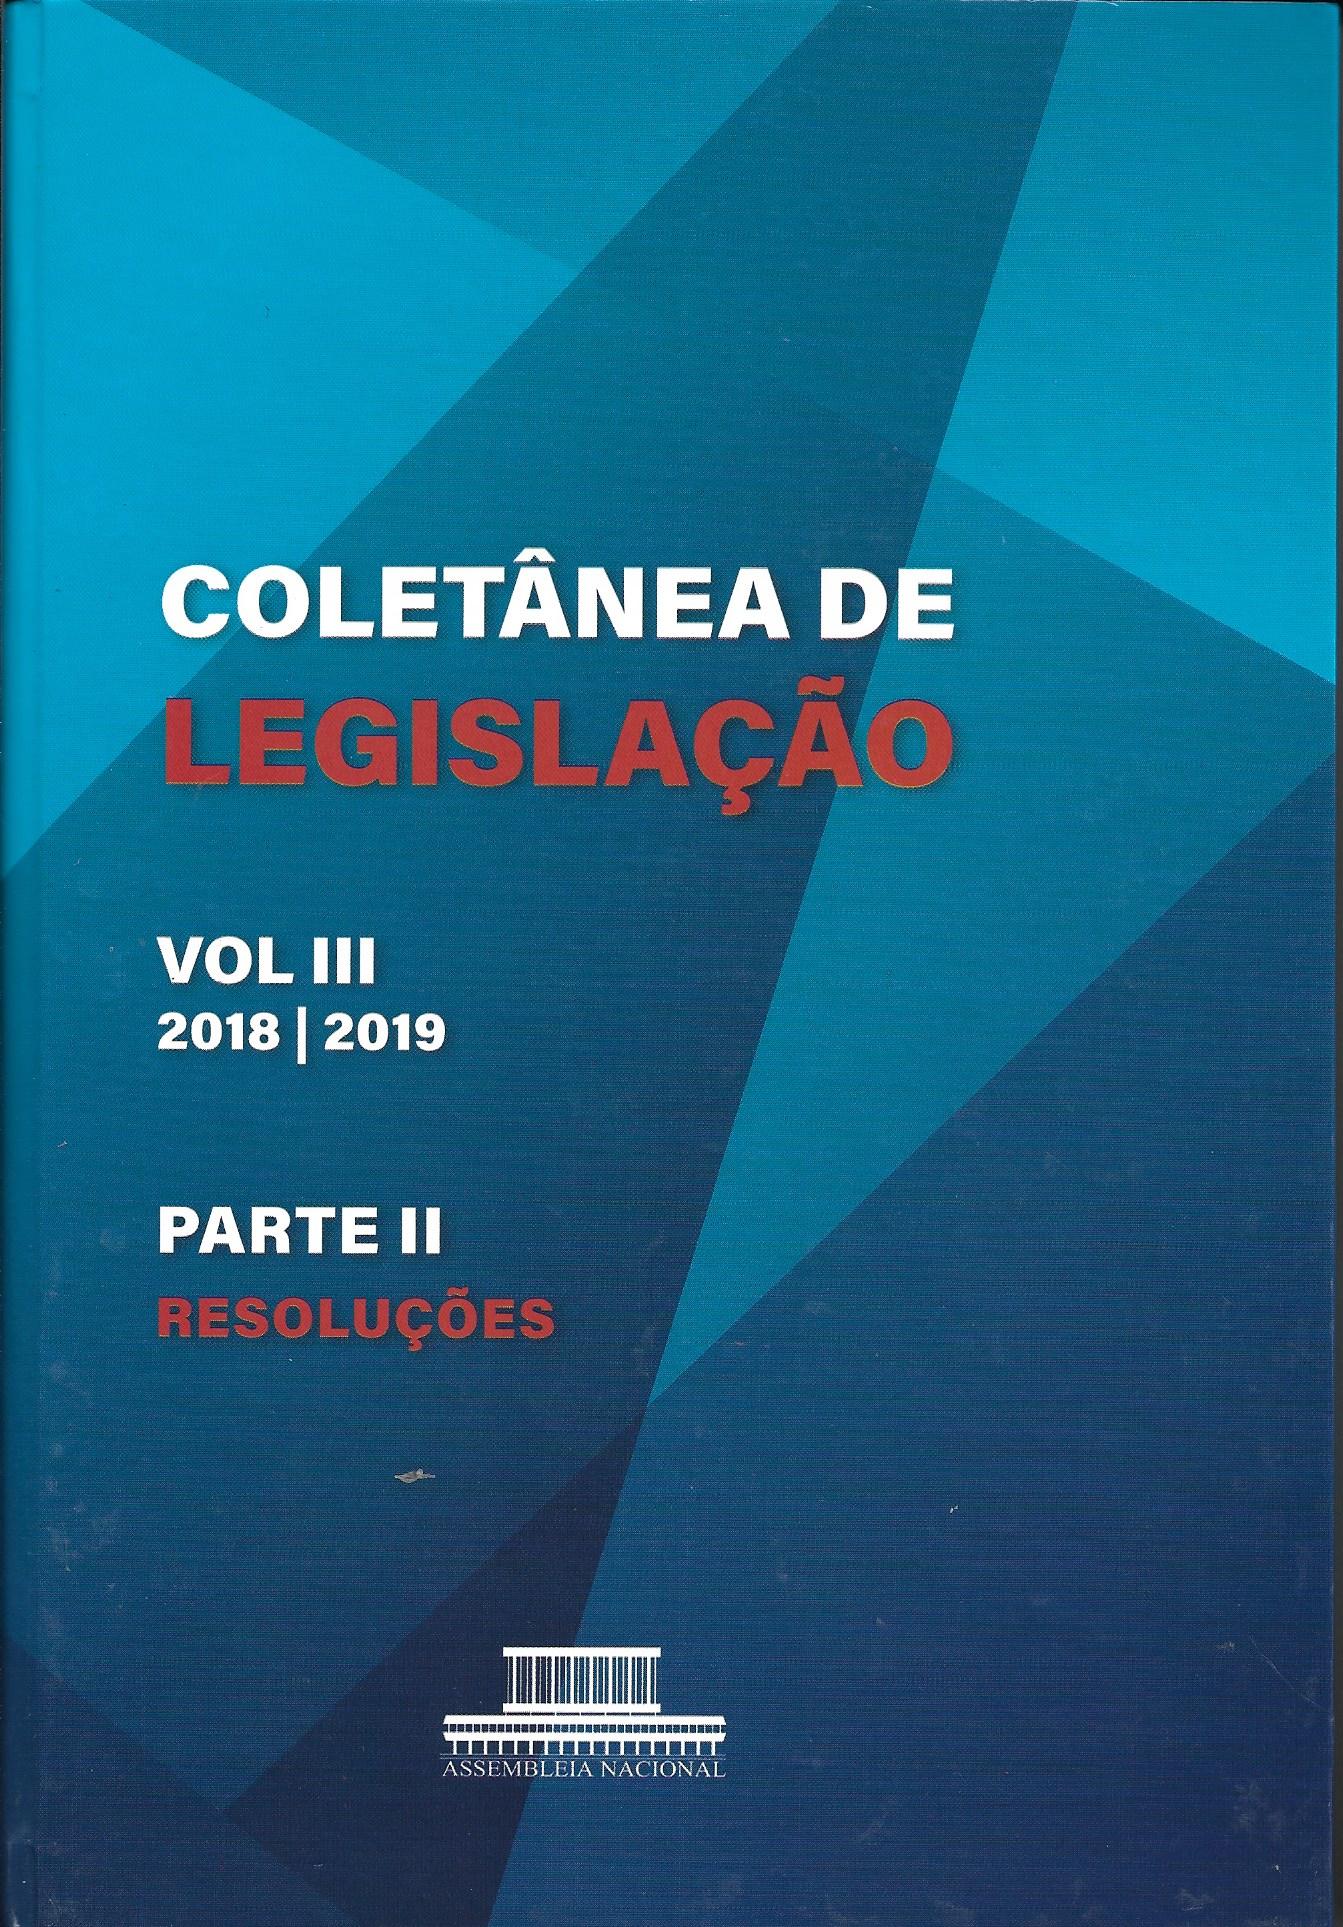 Coletânea de Legislação VOL III 2018/2019 -  Parte II - Resoluções